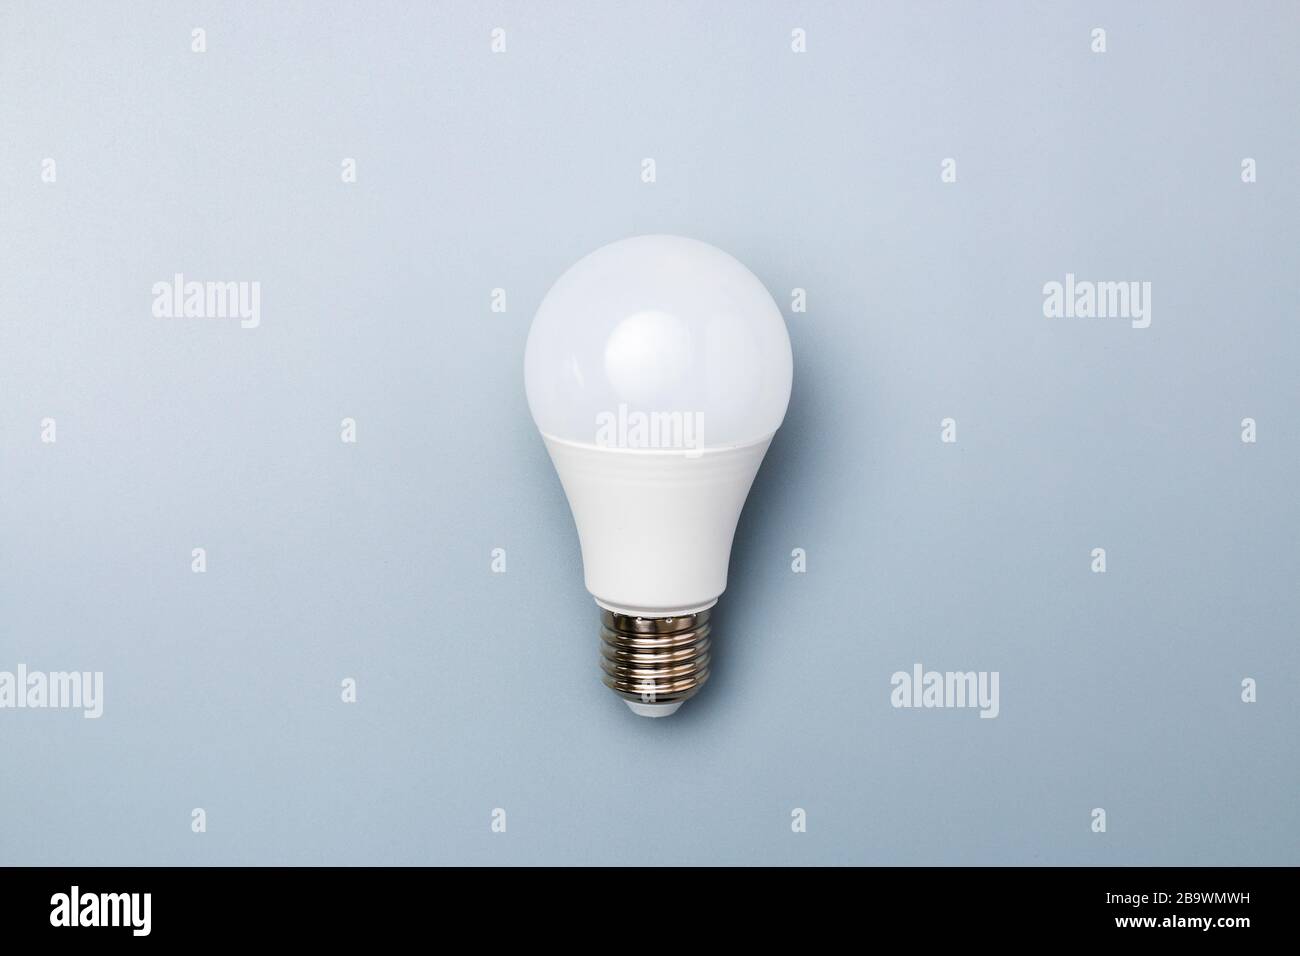 Light Bulb Clipart Etsy